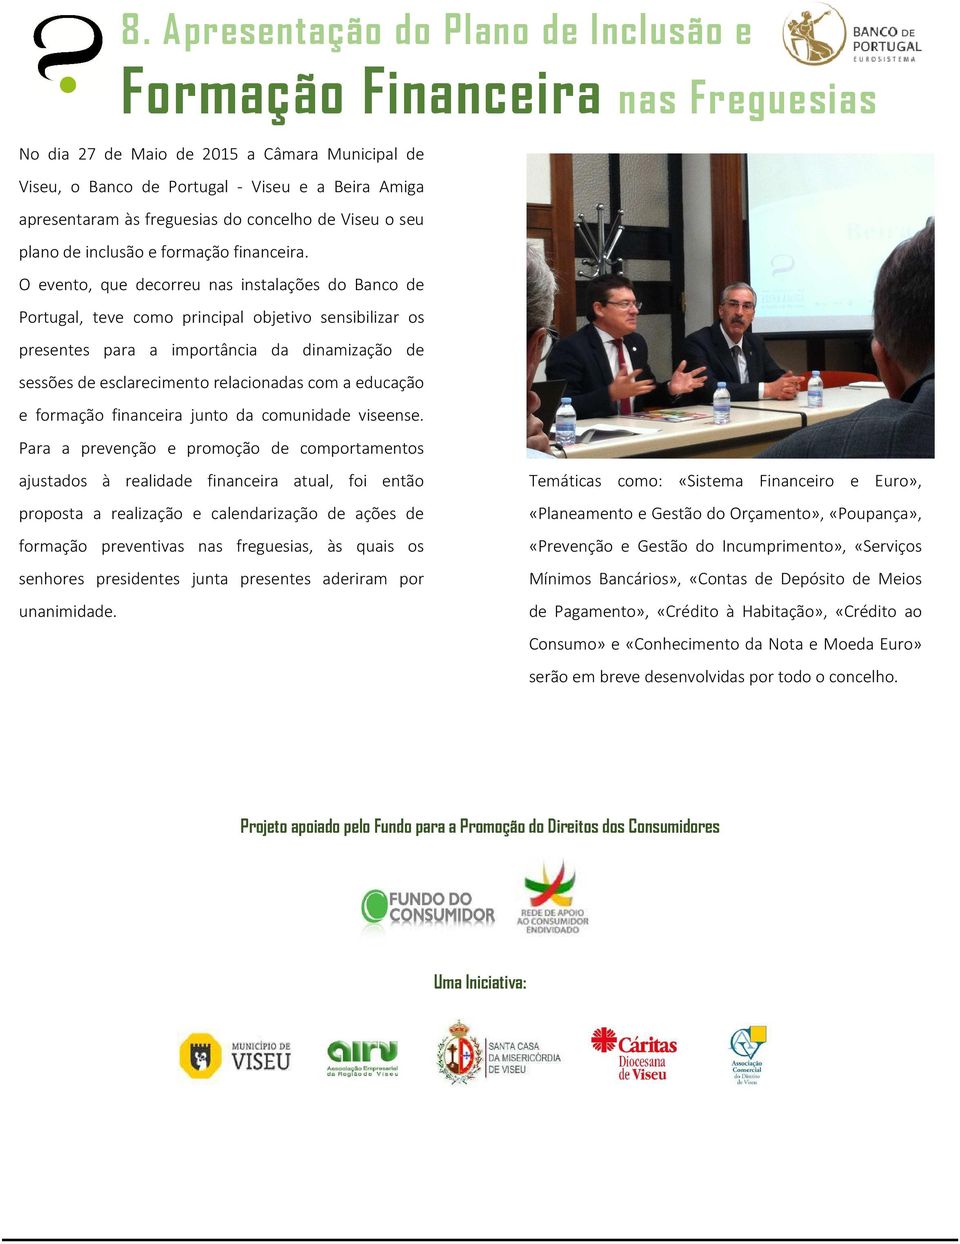 O evento, que decorreu nas instalações do Banco de Portugal, teve como principal objetivo sensibilizar os presentes para a importância da dinamização de sessões de esclarecimento relacionadas com a